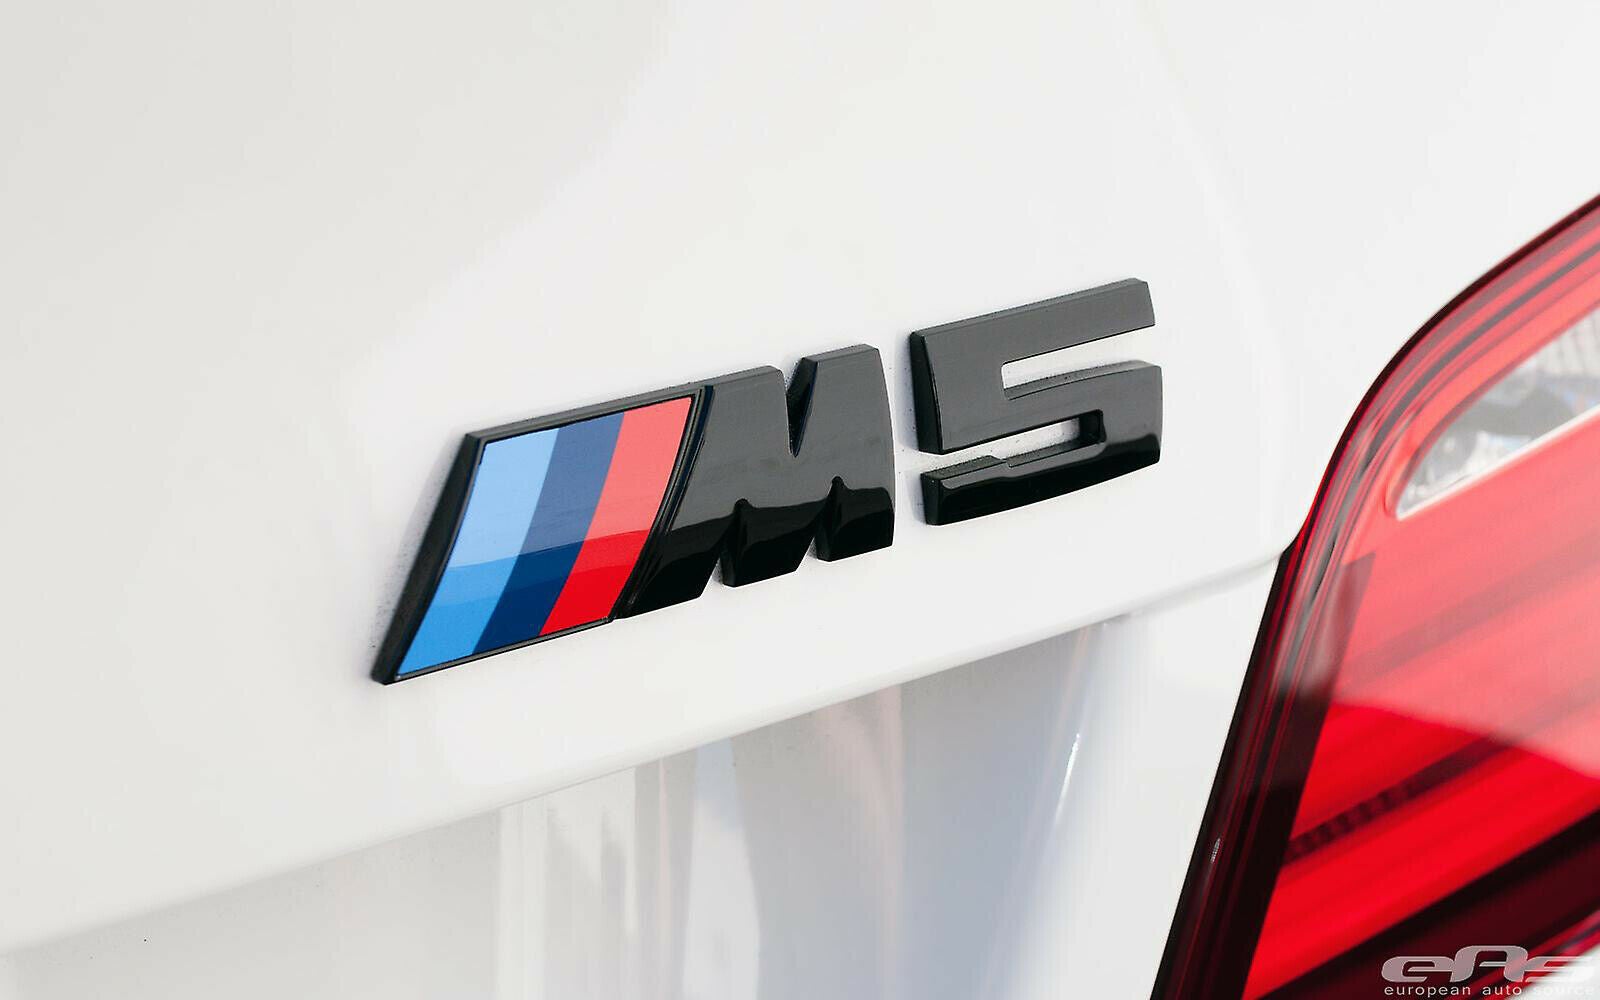 M5 Sort Emblem